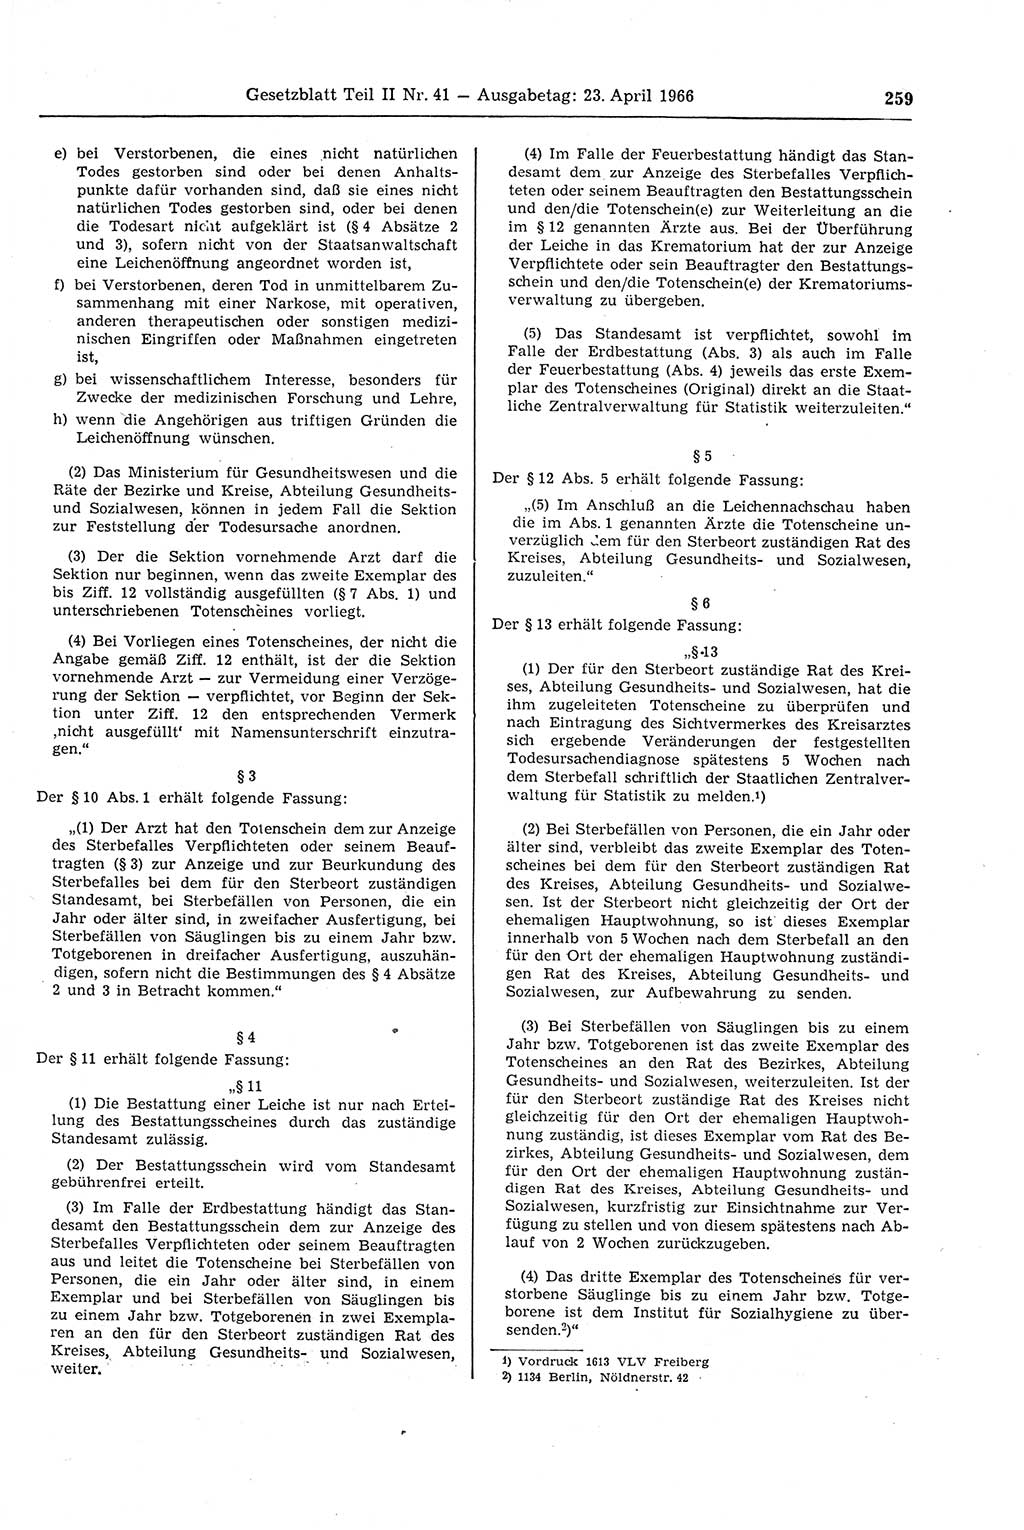 Gesetzblatt (GBl.) der Deutschen Demokratischen Republik (DDR) Teil ⅠⅠ 1966, Seite 259 (GBl. DDR ⅠⅠ 1966, S. 259)